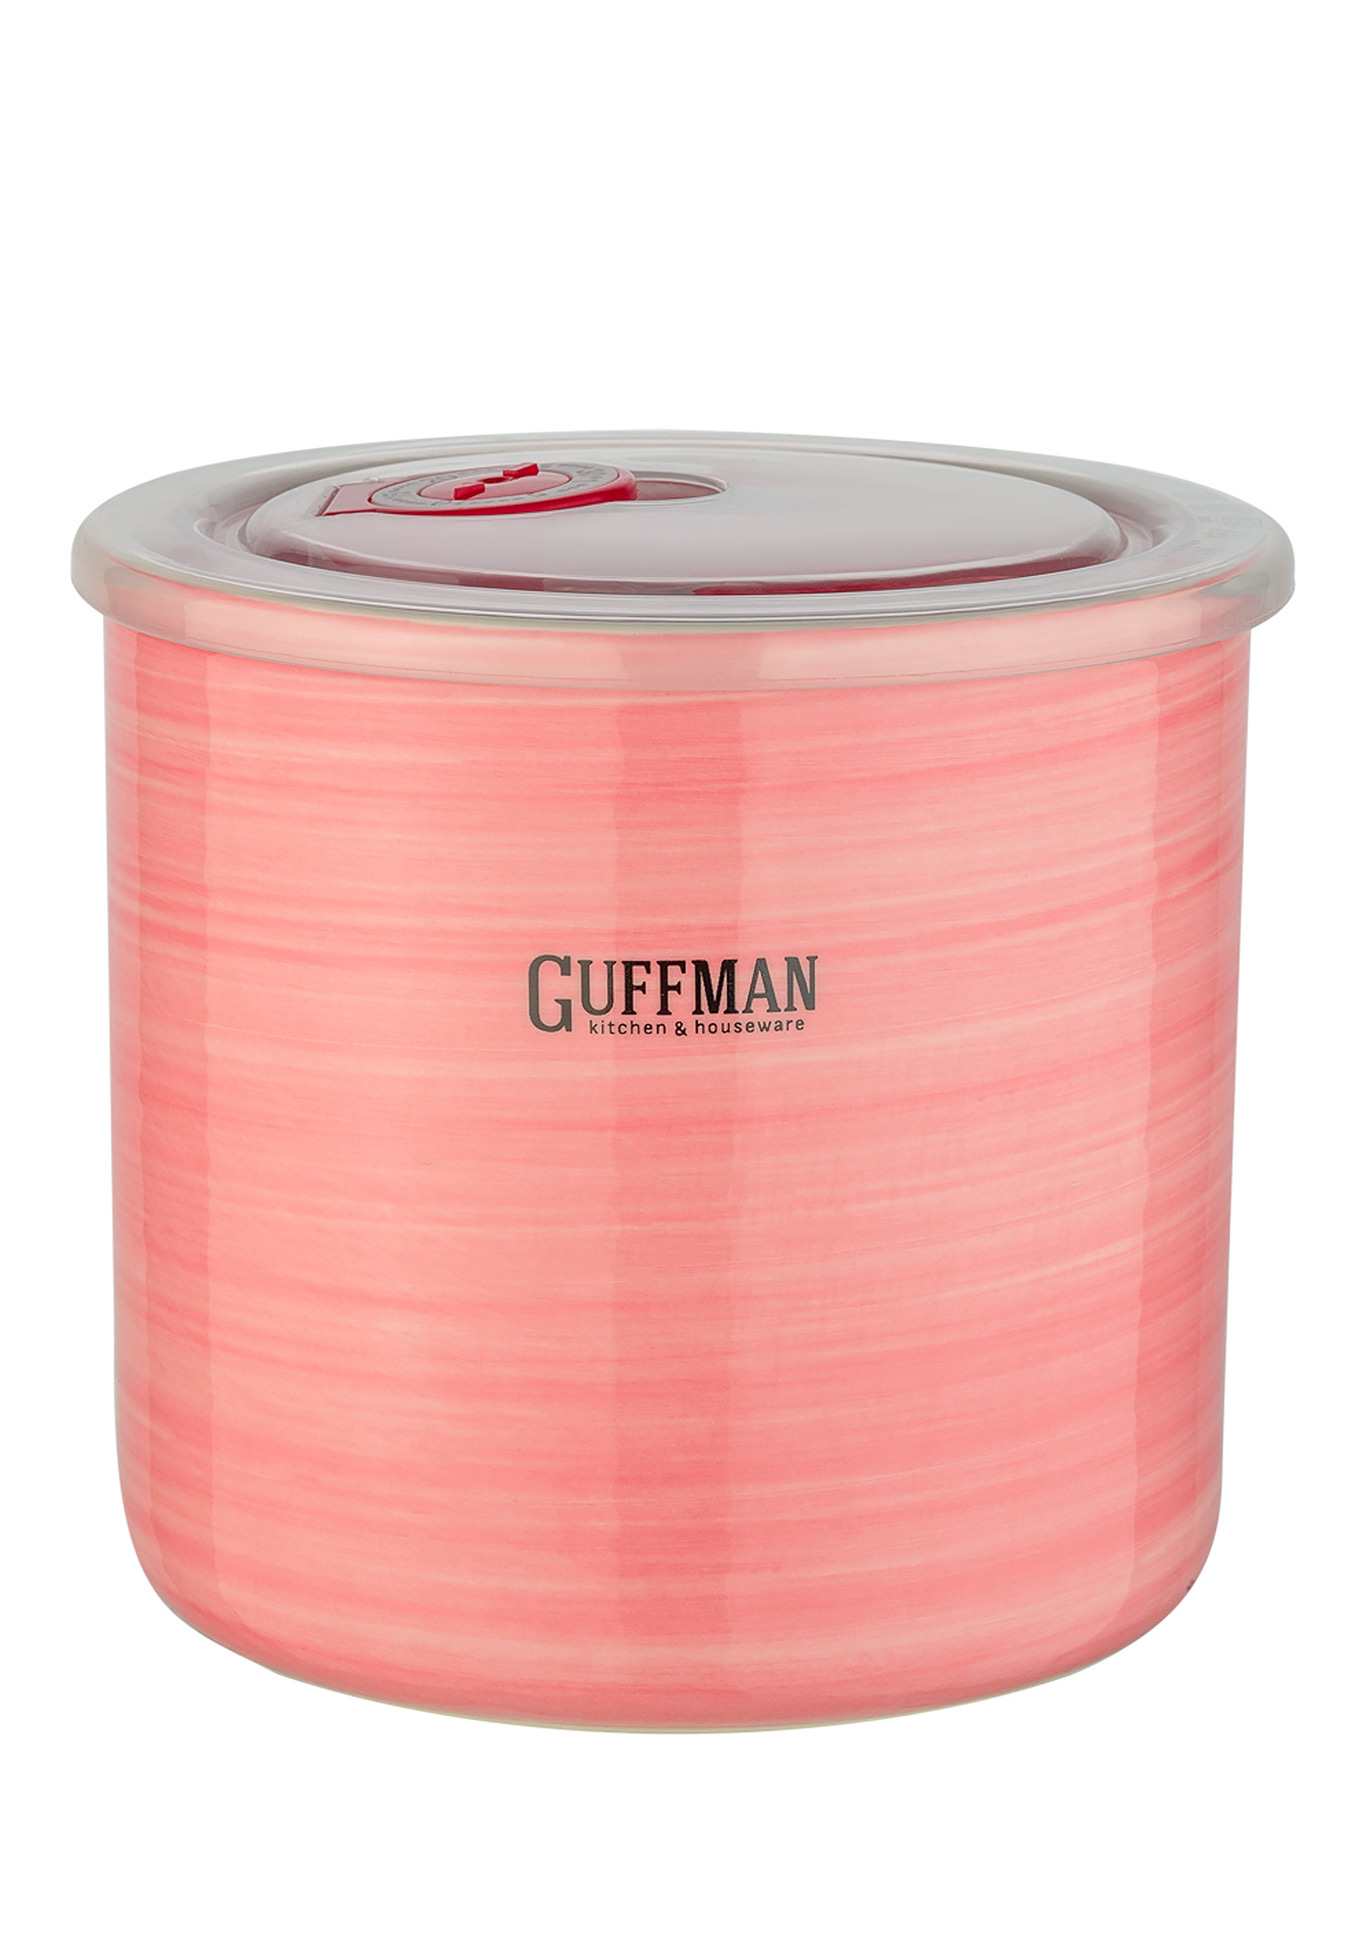 GUFFMAN Керамическая банка, розовая, 1 л GUFFMAN - фото 1